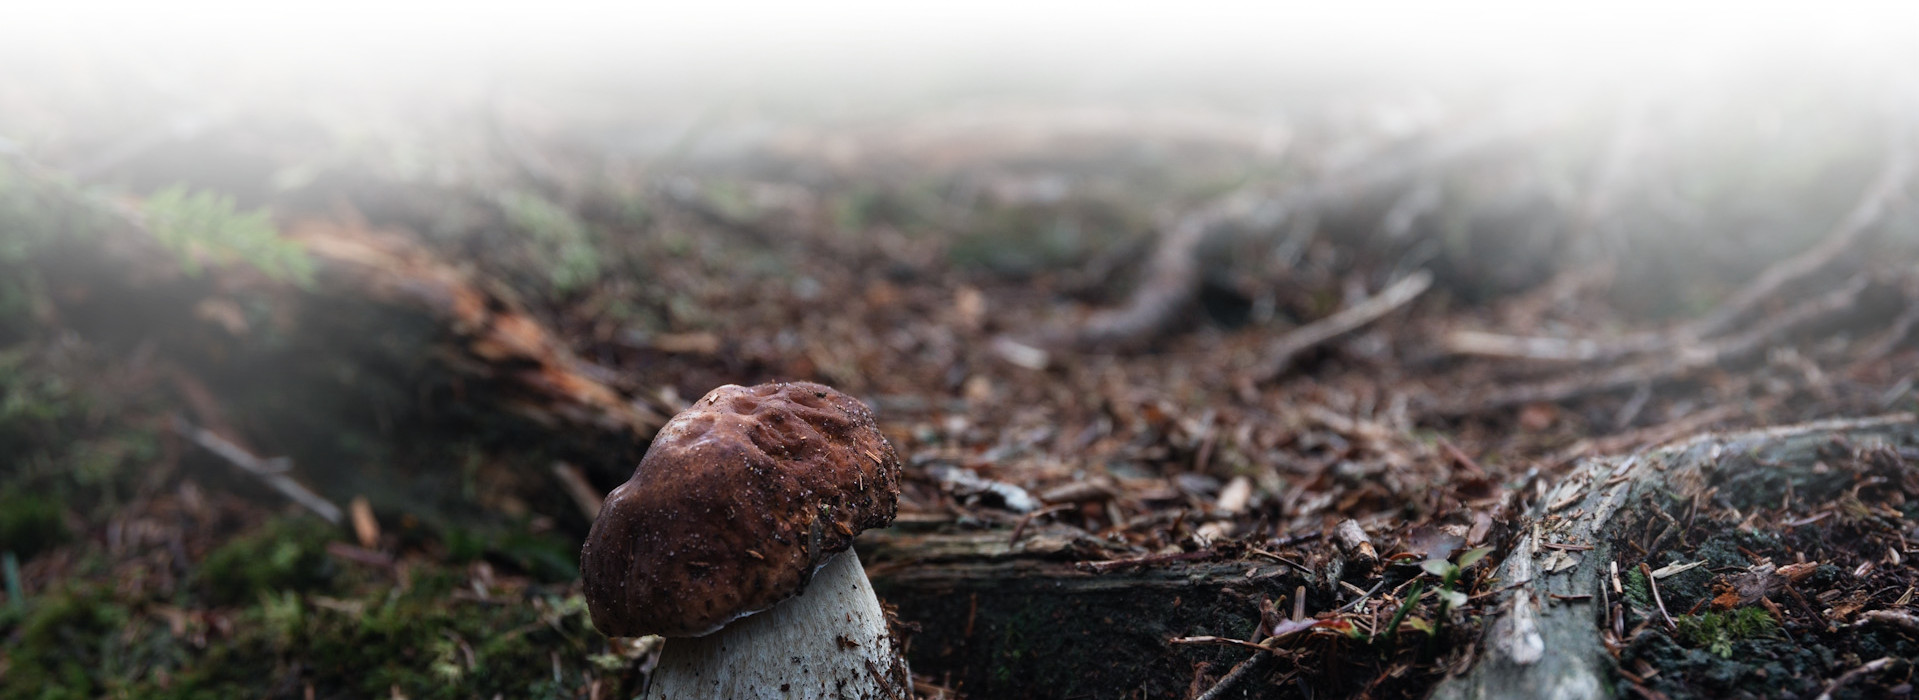 Steinpilz auf Waldboden wachsend © Benedikt Huck (Nationalpark Schwarzwald)